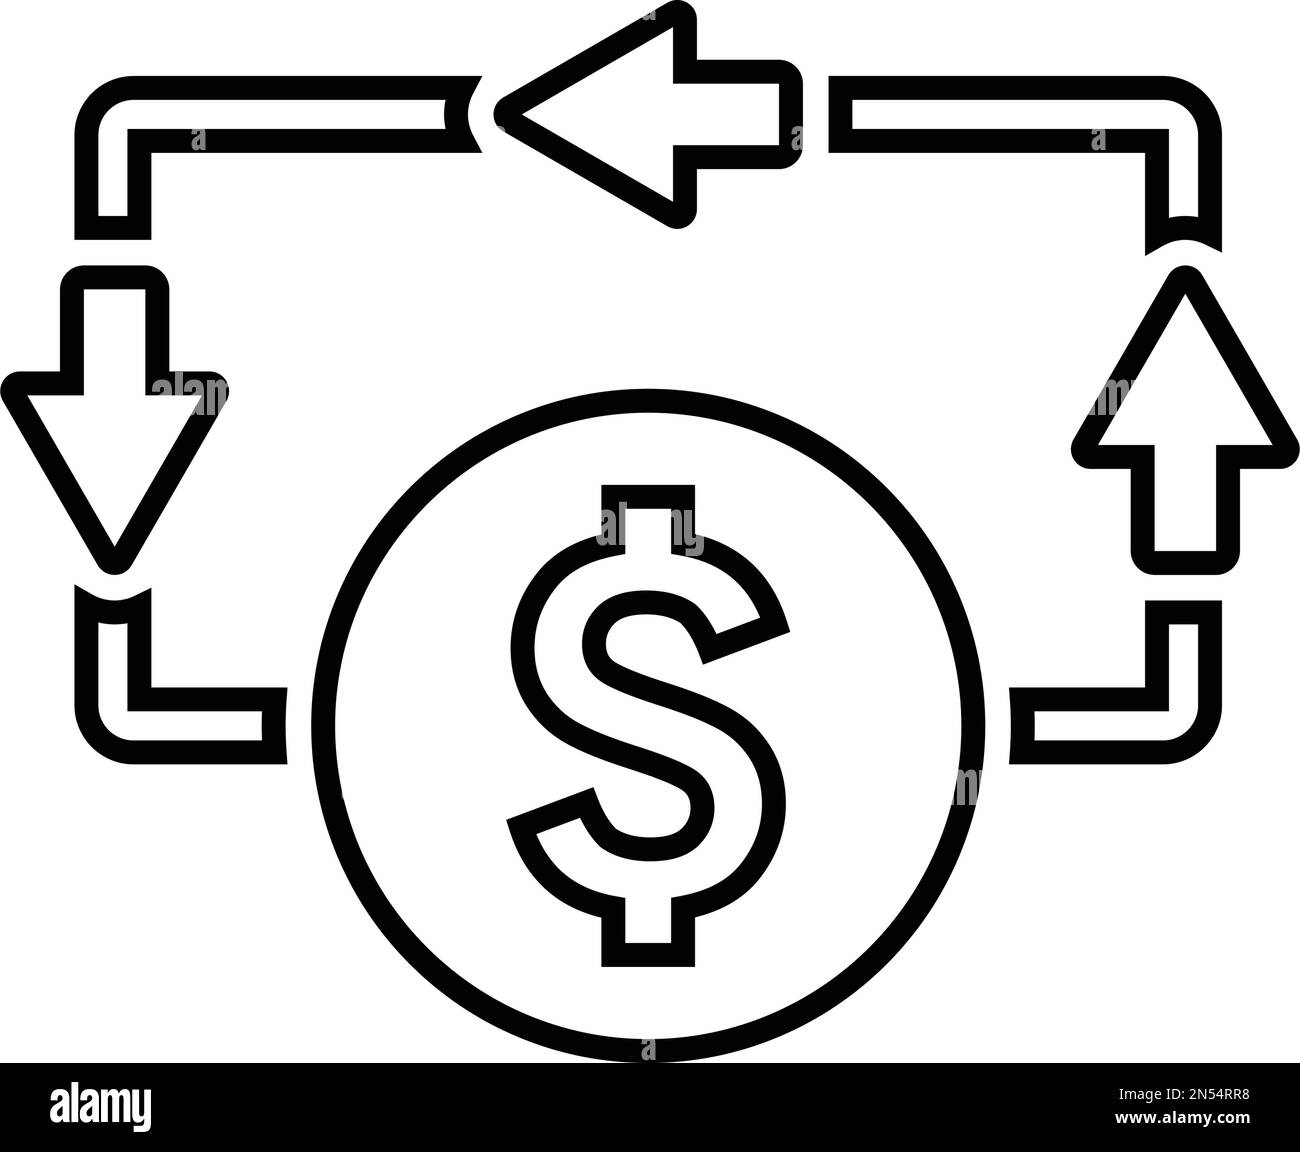 Das Symbol für Fluss, Geld, Bargeld ist auf weißem Hintergrund isoliert. Verwendung für Grafik- und Webdesign oder kommerzielle Zwecke. Vektor-EPS-Datei. Stock Vektor